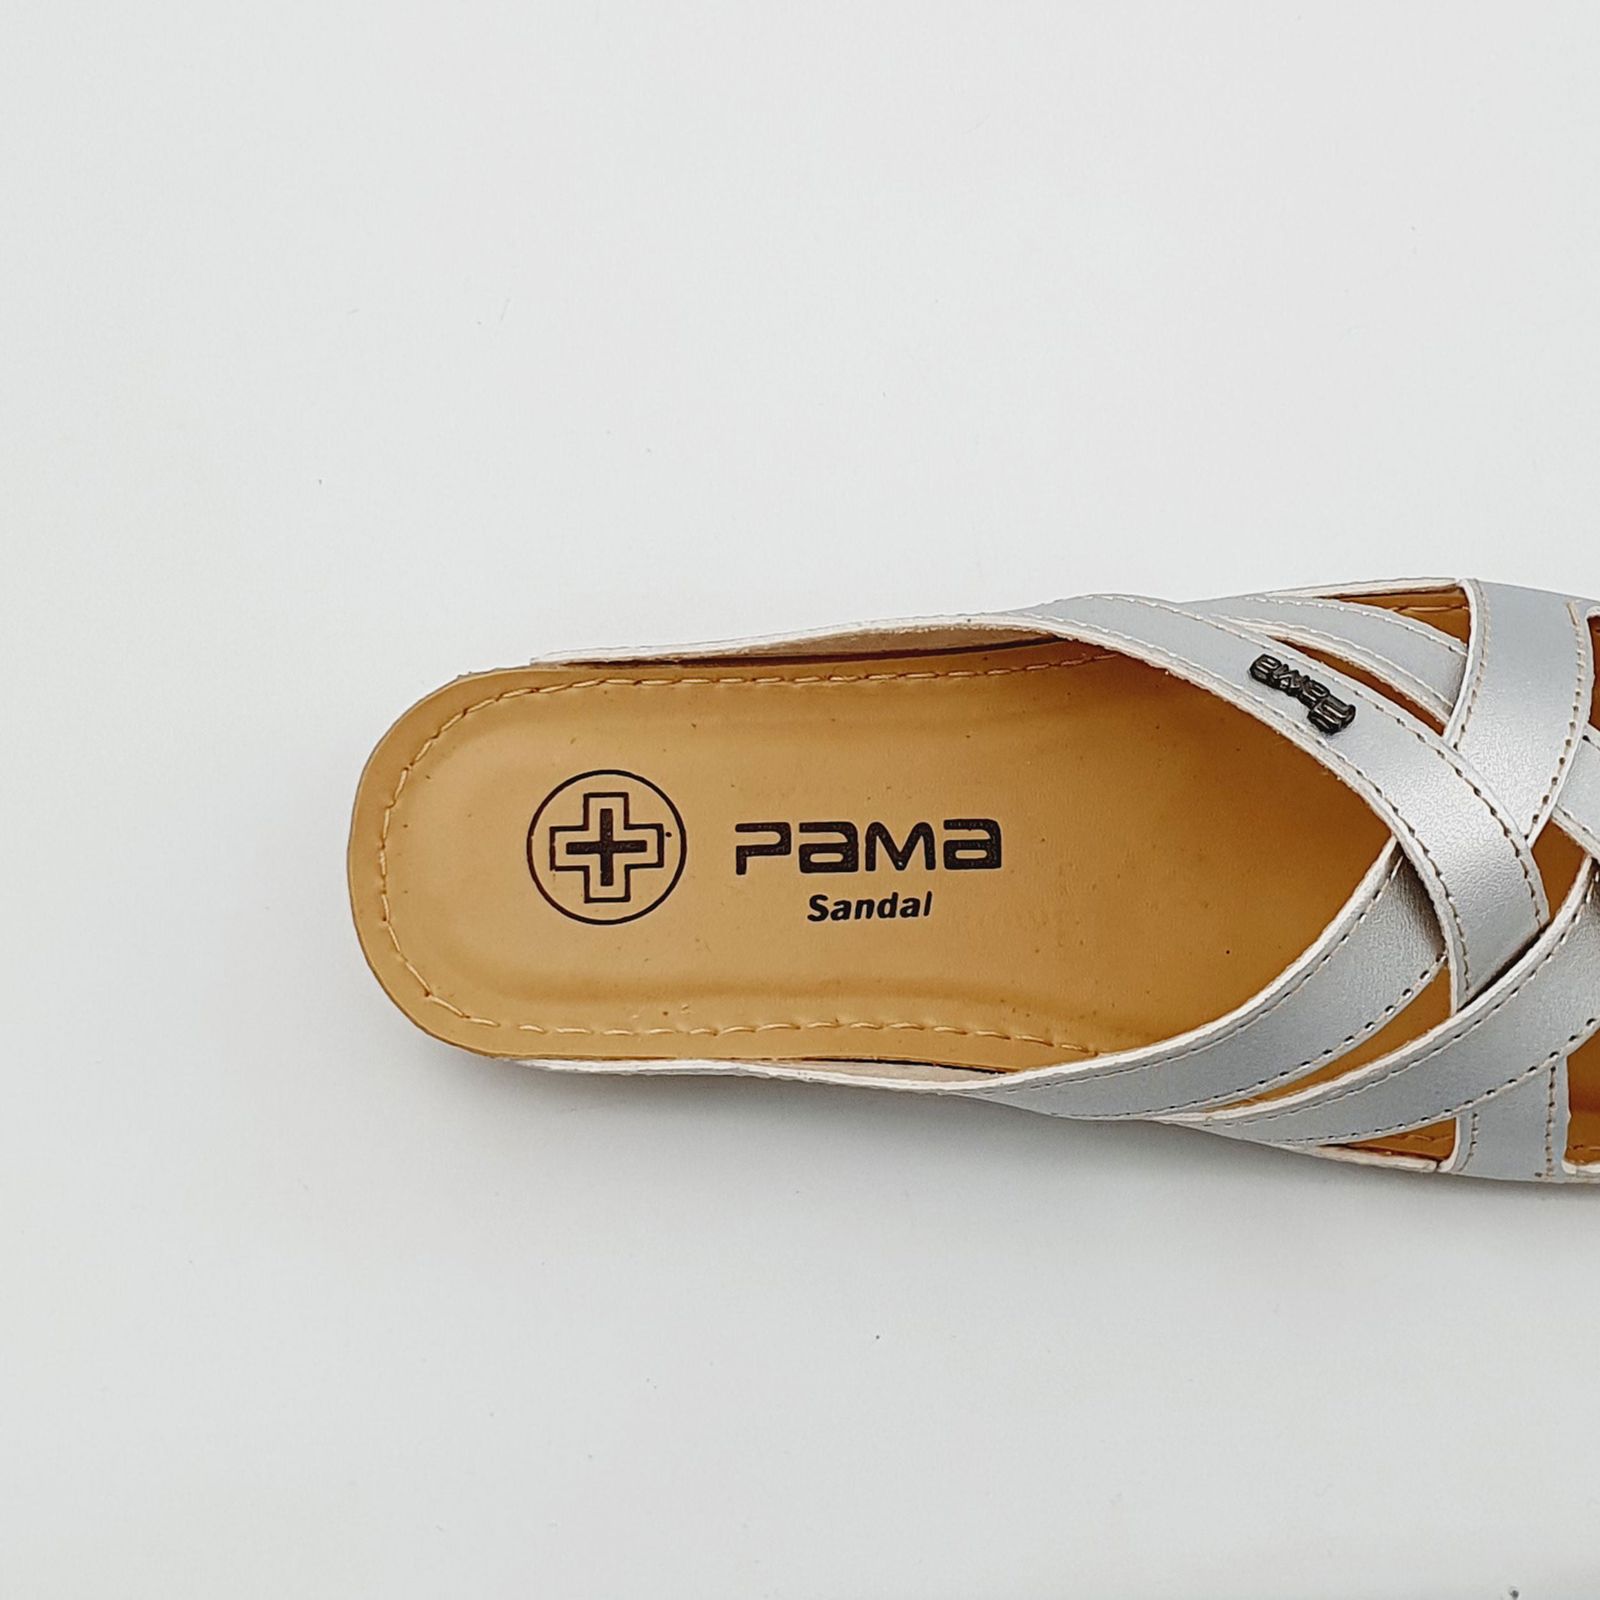 دمپایی زنانه پاما مدل الیکا کد G1687 -  - 7